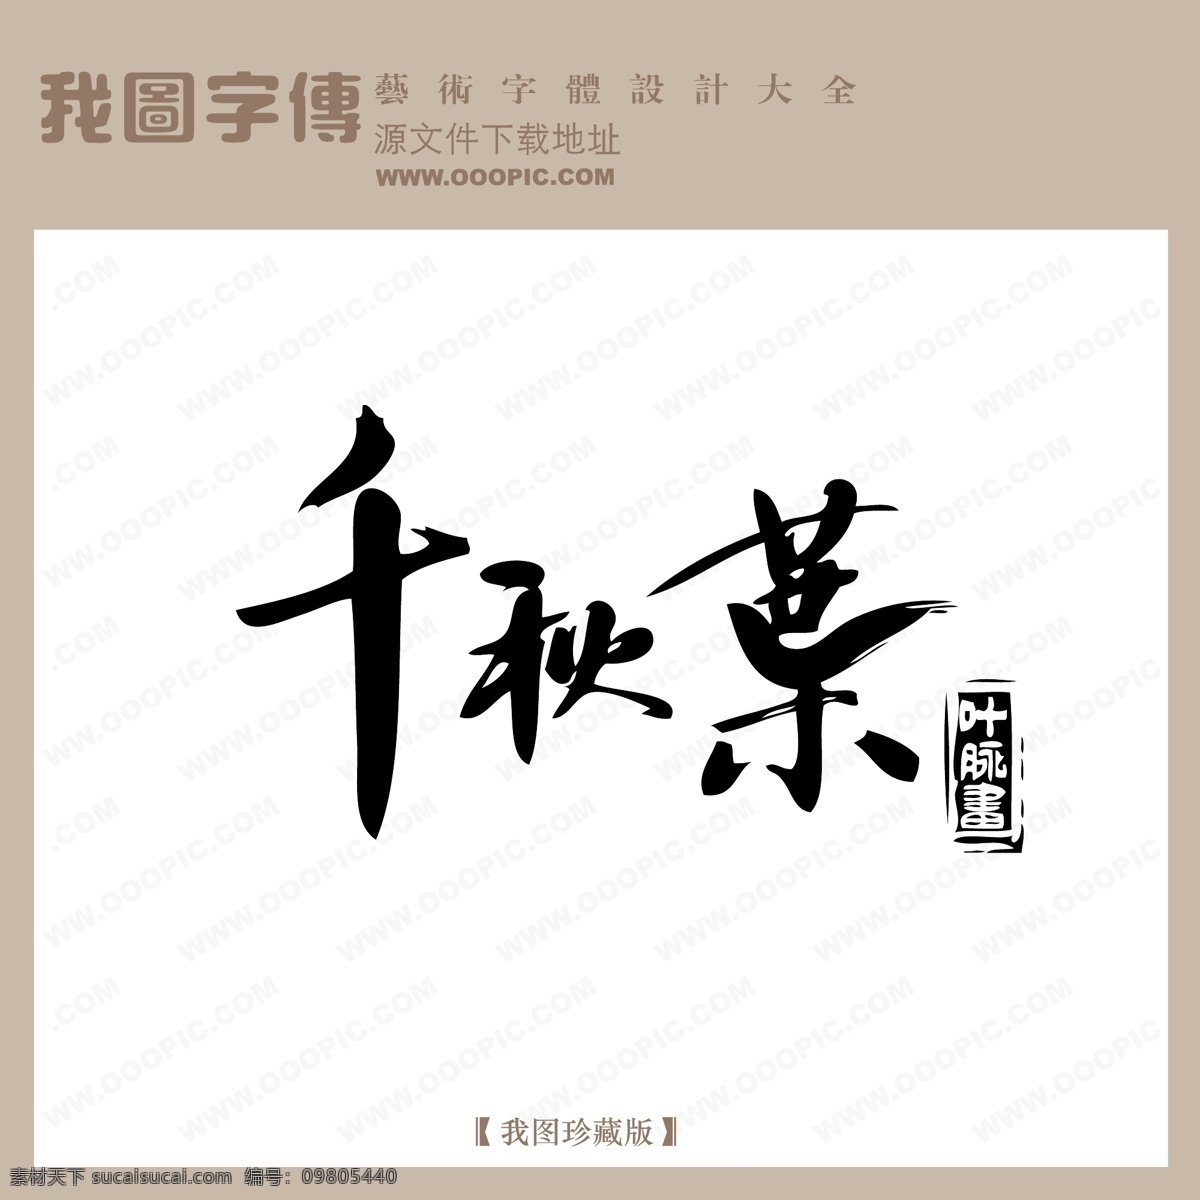 免费字体设计 艺术字体设计 艺术字下载 在线字体设计 中国字体设计 中文字体设计 字体设计 字体设计欣赏 千秋 叶 字体 矢量图